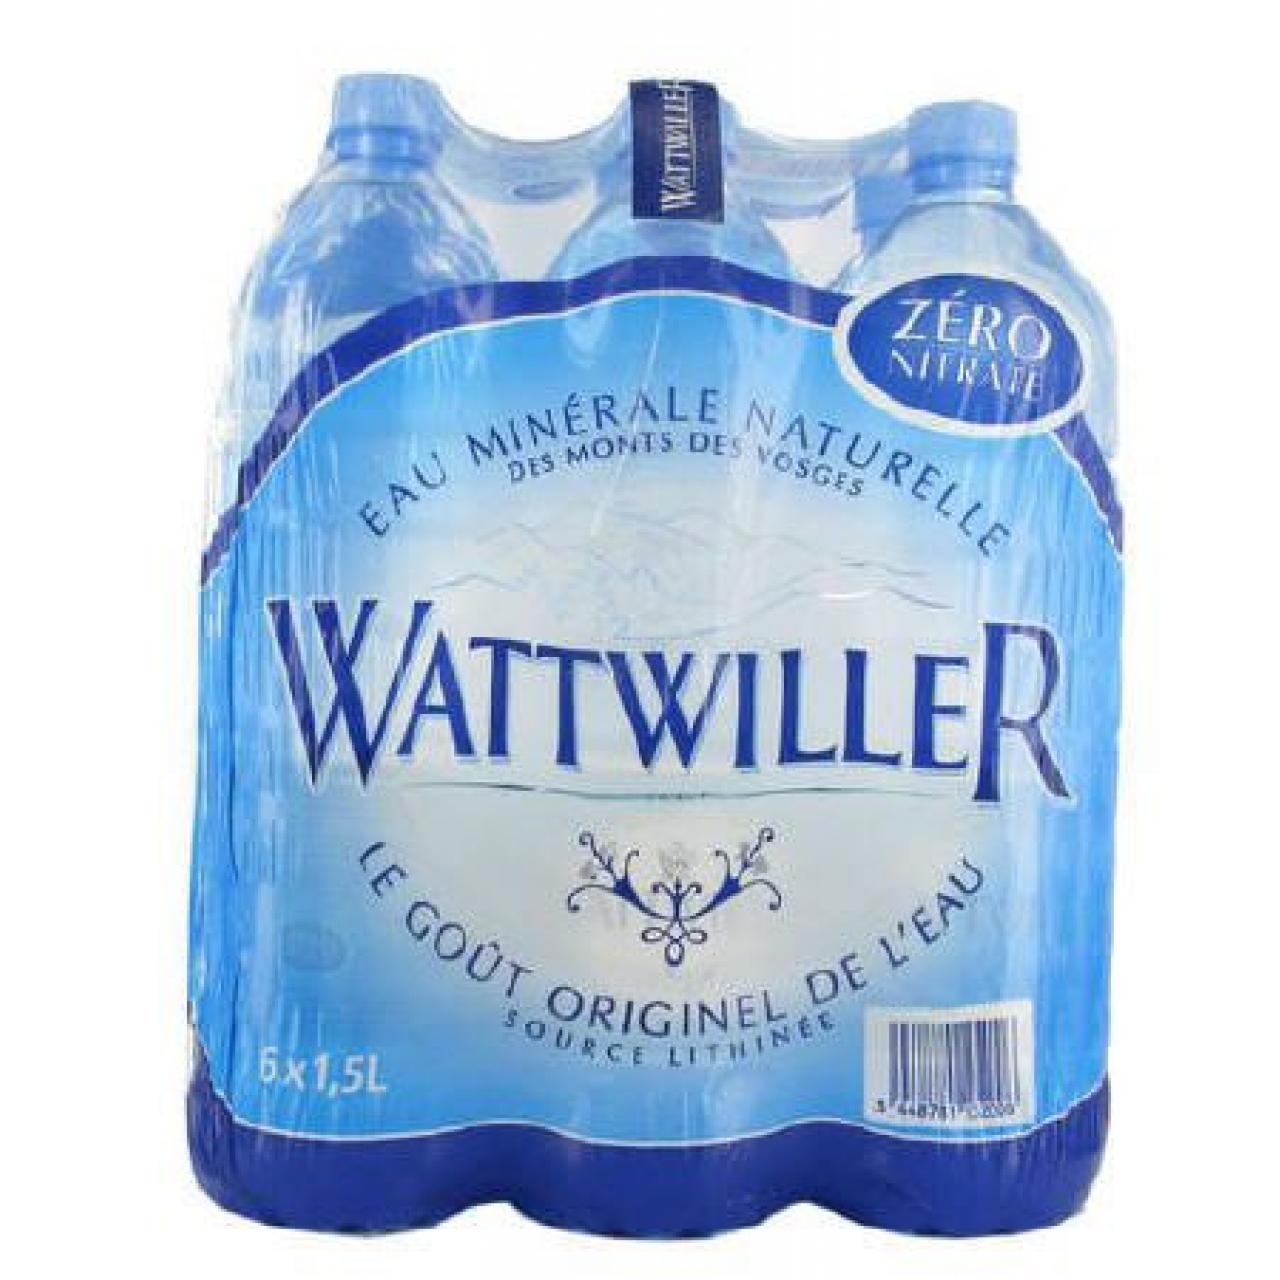 WATTWILLER 6X150 CL PET